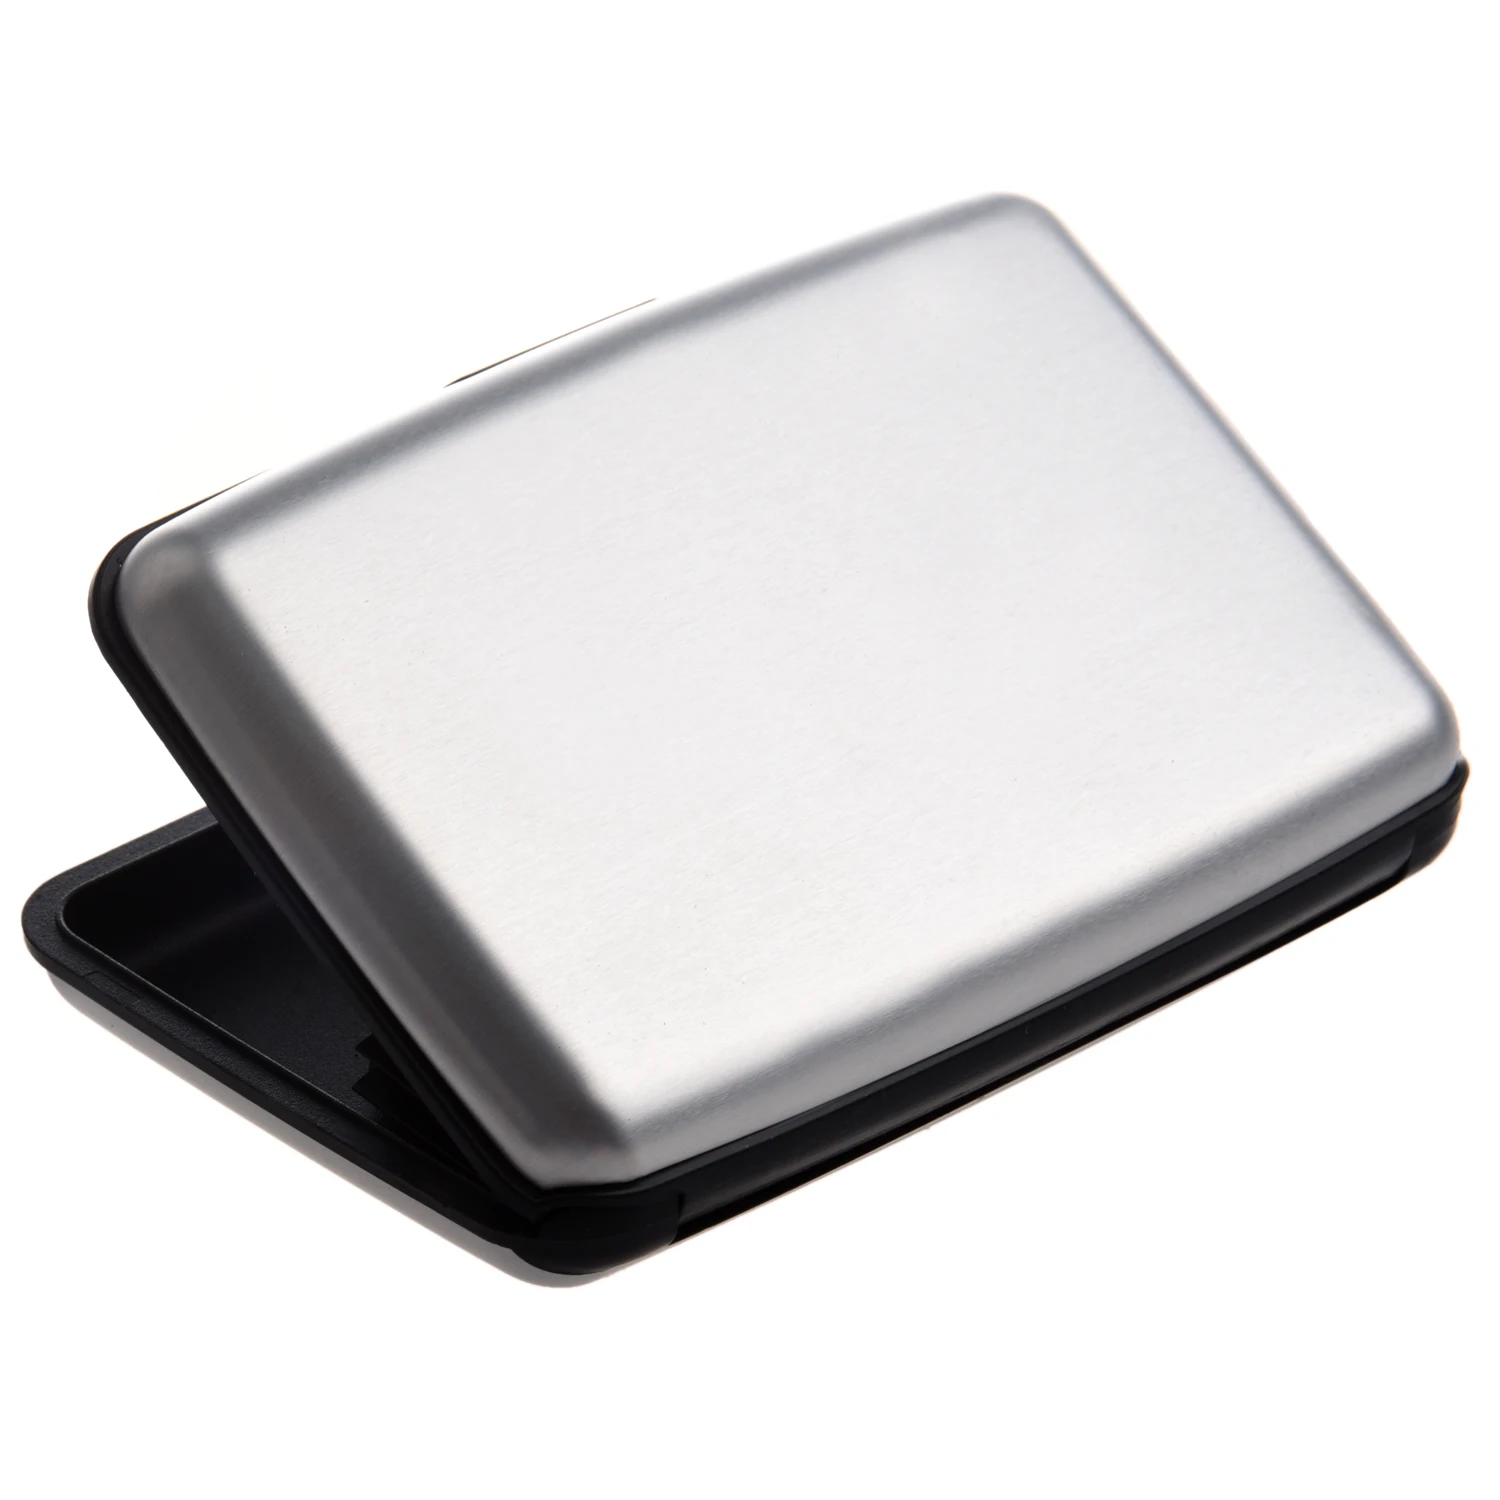 Алюминиевый корпус, держатель для кредитных карт, металлический кошелек, один размер, серебристый